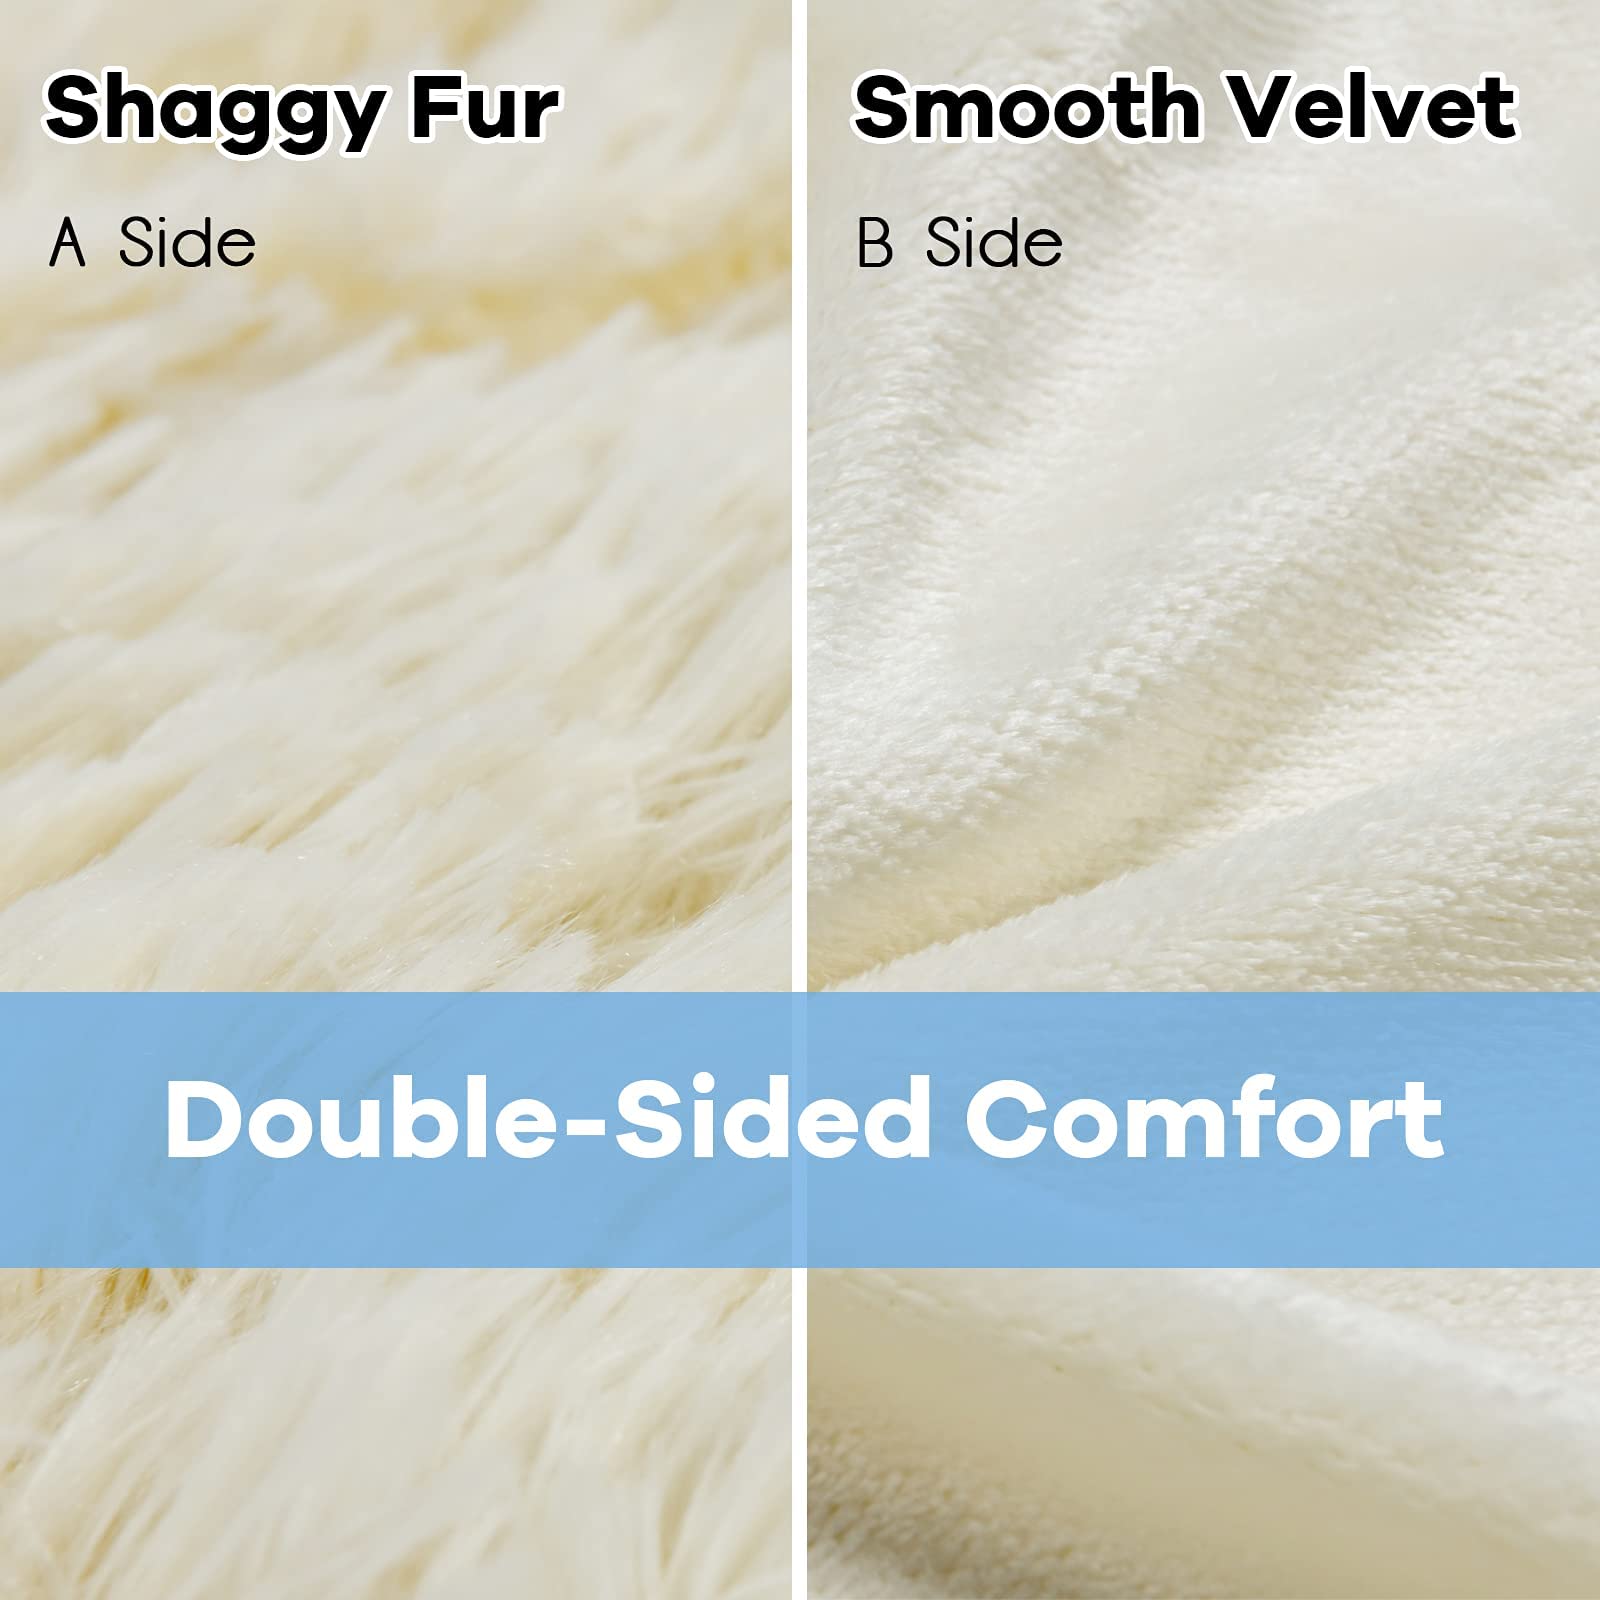 Giantex Reversible Soft Fur Blanket, Oversized Fluffy Throw Blanket